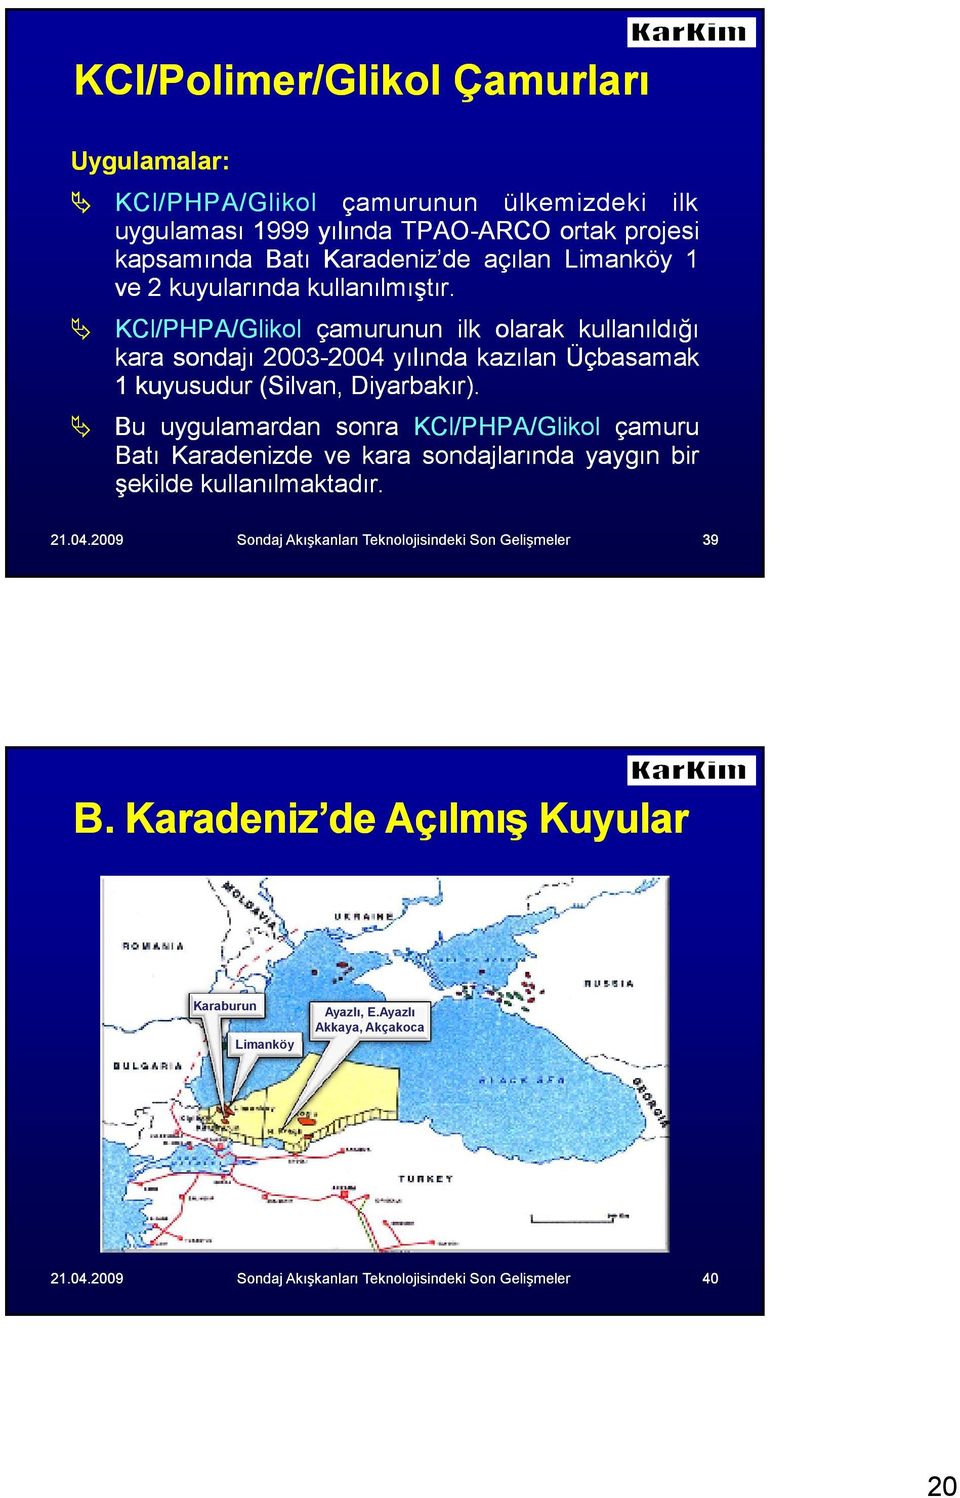 KCl/PHPA/Glikol çamurunun ilk olarak kullanıldığı kara sondajı 2003-20042004 yılında kazılan Üçbasamak 1 kuyusudur (Silvan, Diyarbakır).